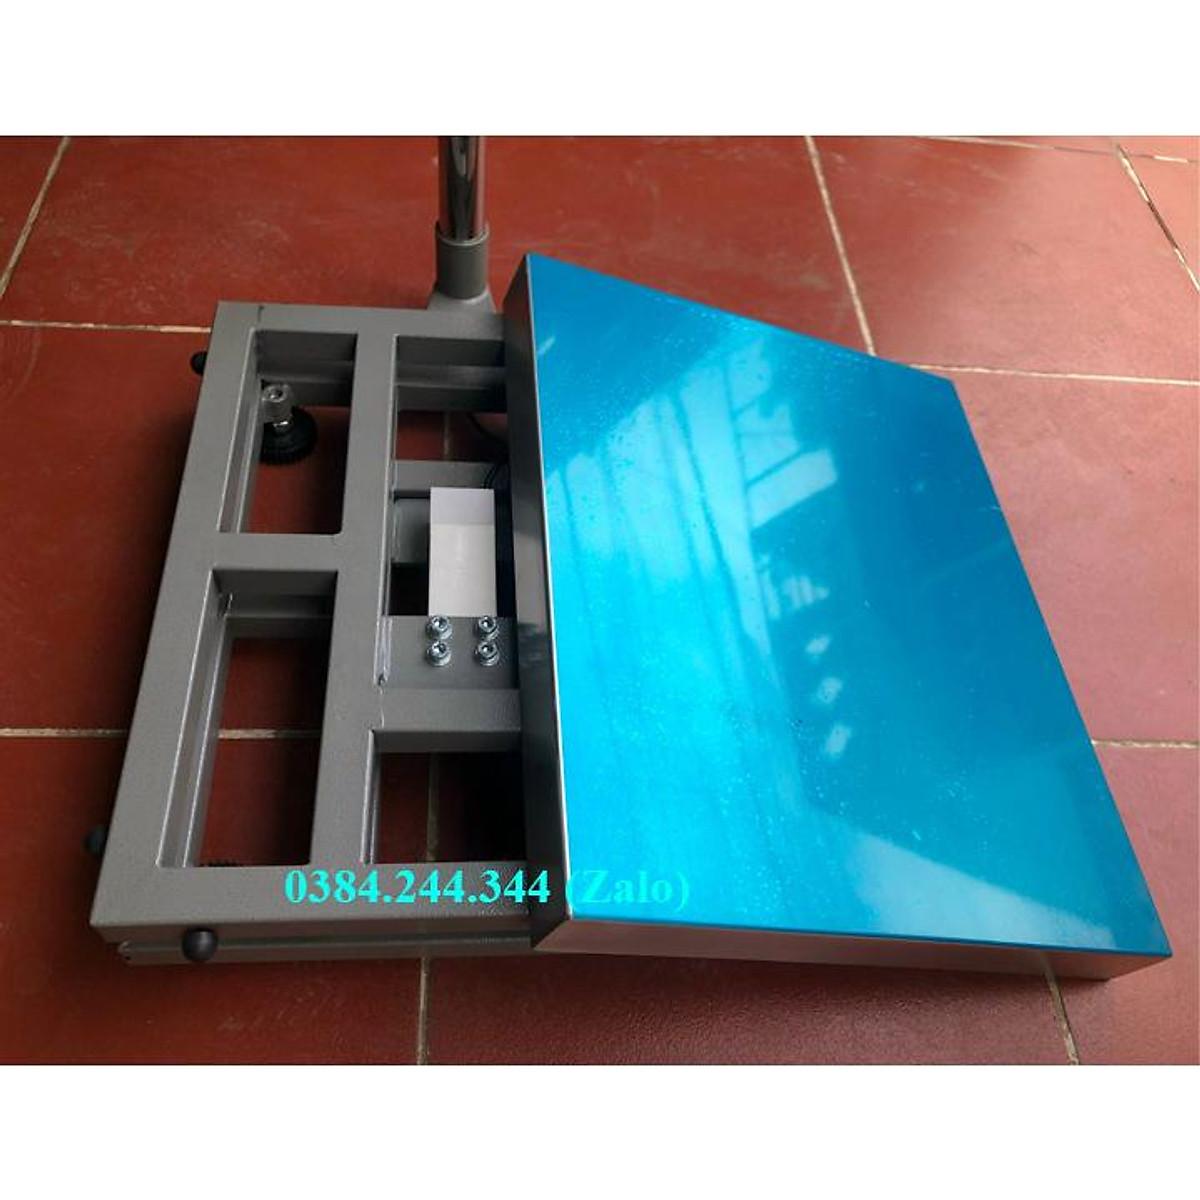 Cân bàn điện tử thông dụng Yaohua A12E, Mức cân 60kg, độ chia 0.01kg, Bàn cân kích thước 40x50cm (rộng x sâu)